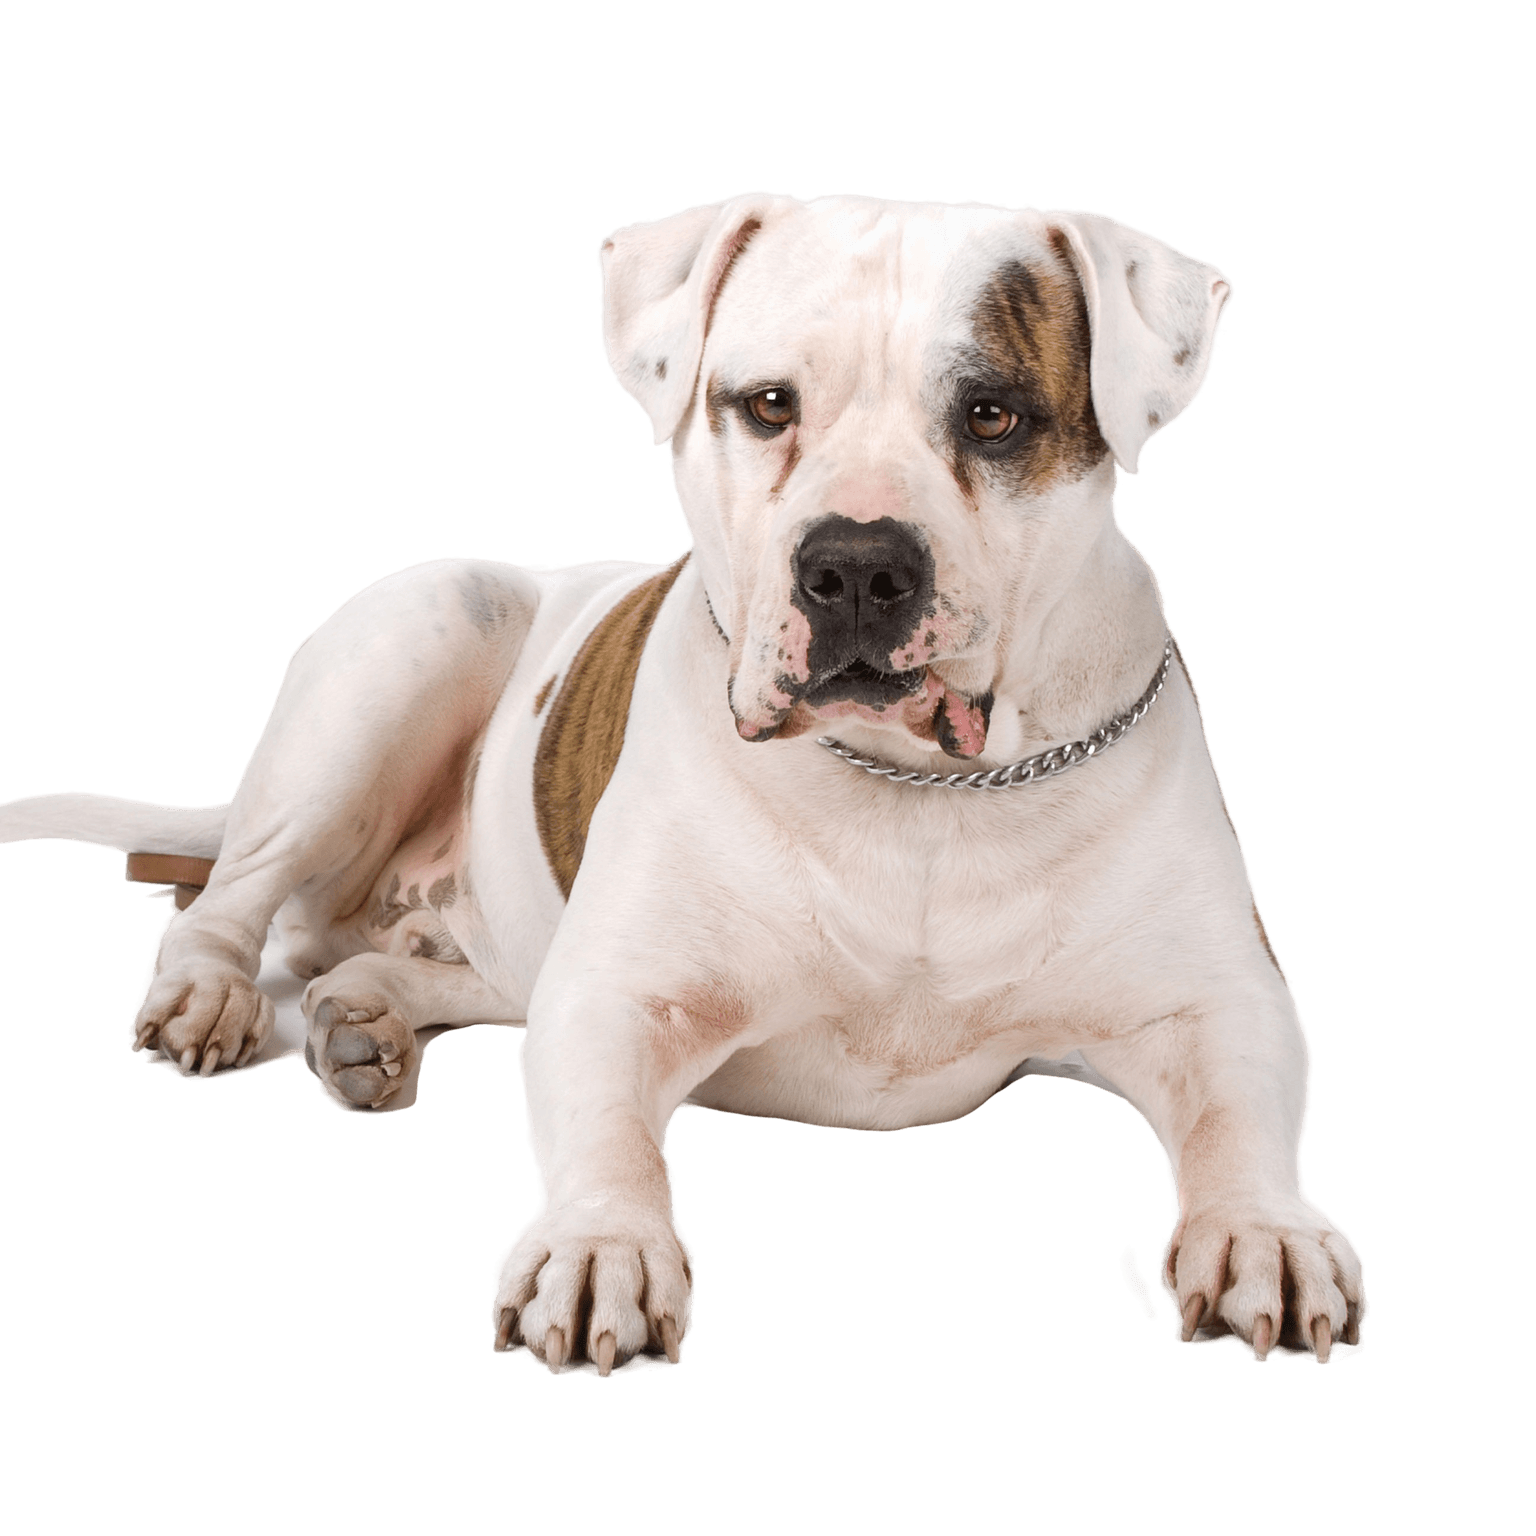 American Bulldog Breed Description